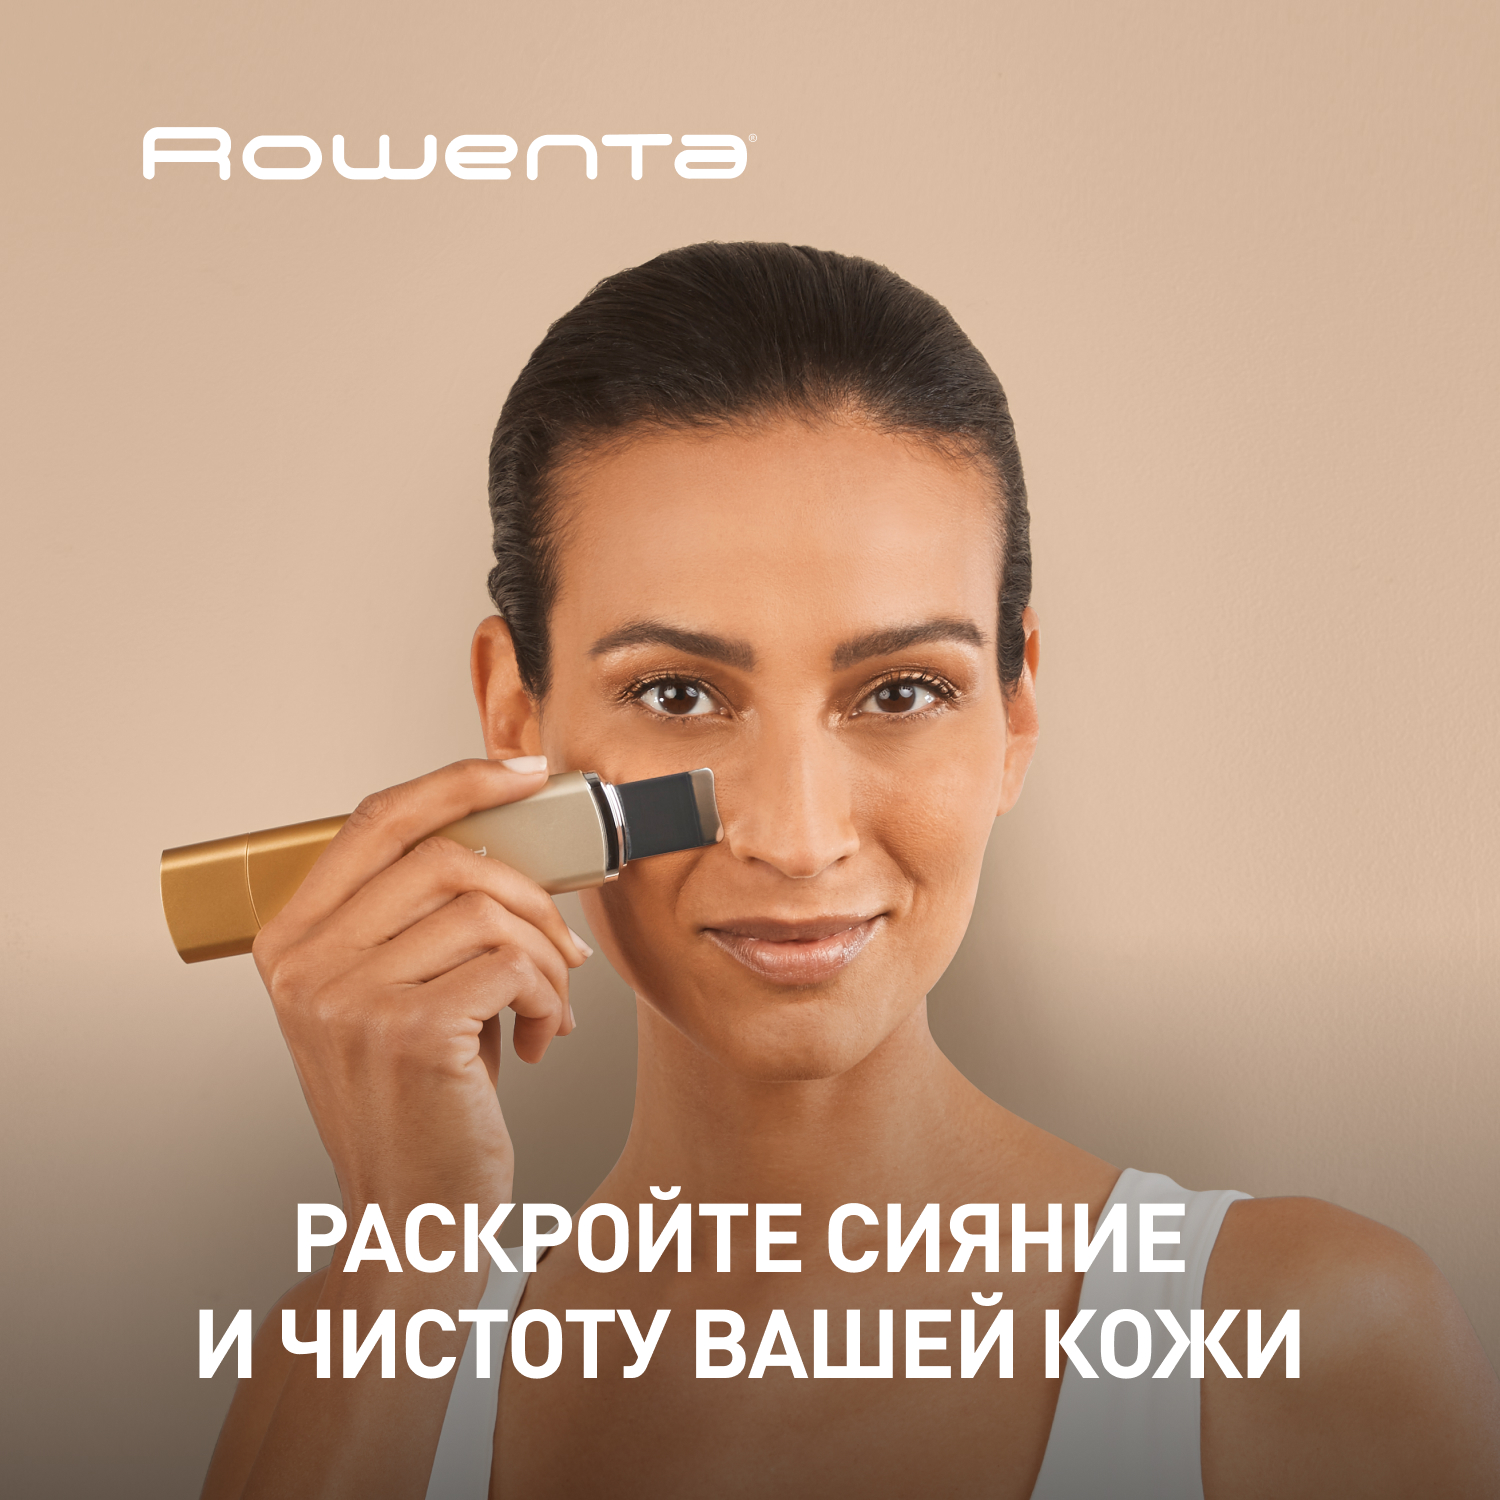 Ультразвуковой прибор для очистки лица Rowenta Skin-Sonic Purifier LV8030F0 скрабер для ультразвуковой чистки лица evo beauty skinscrubber 3 w